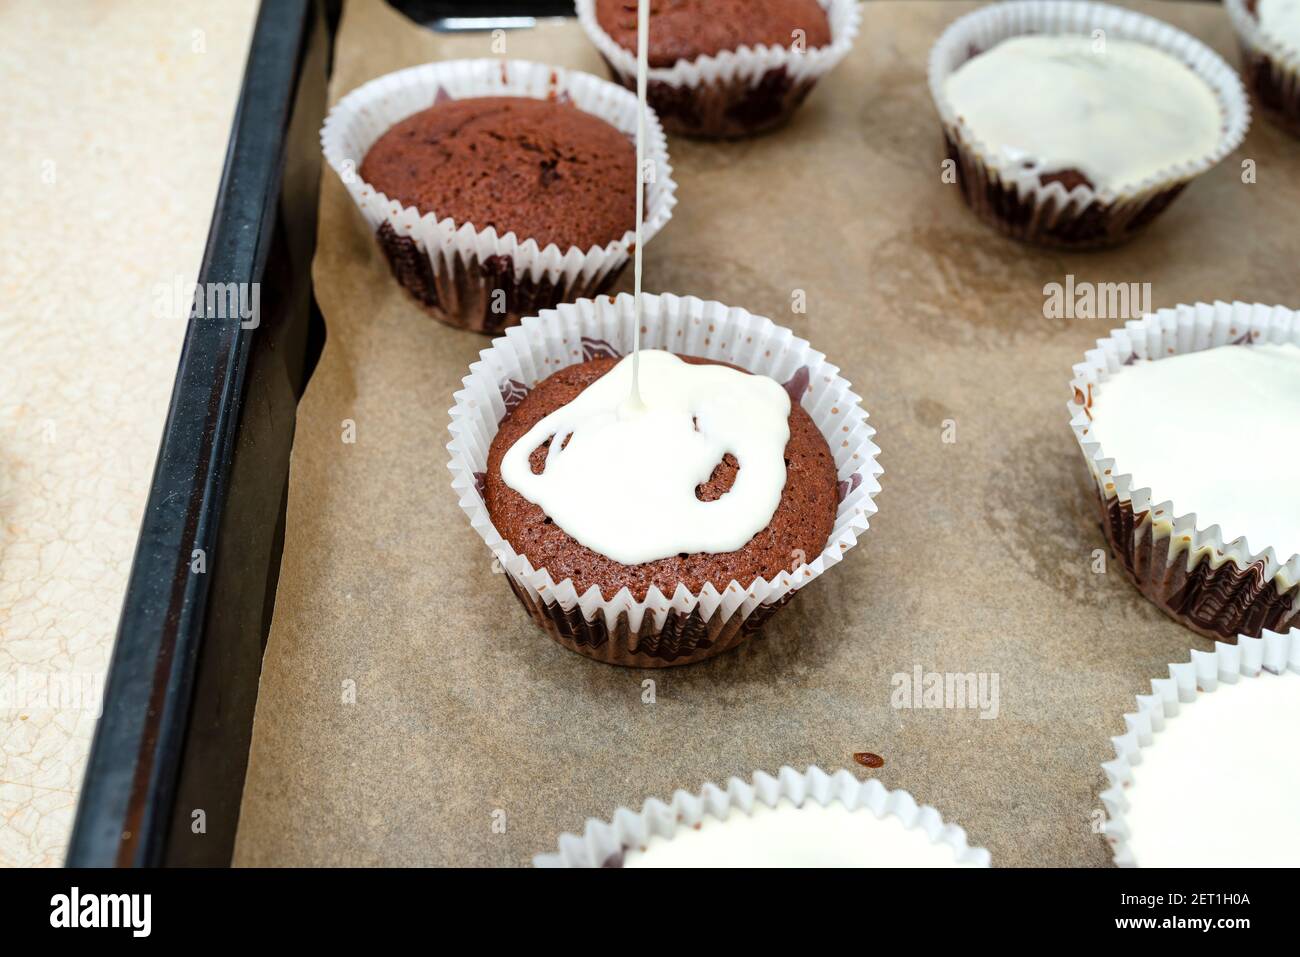 Schokoladen-Muffin-Kuchen braun in weißem Papier gewickelt und mit weißem  Zuckerguss bedeckt, im Ofen gebacken, auf Backpapier liegend  Stockfotografie - Alamy